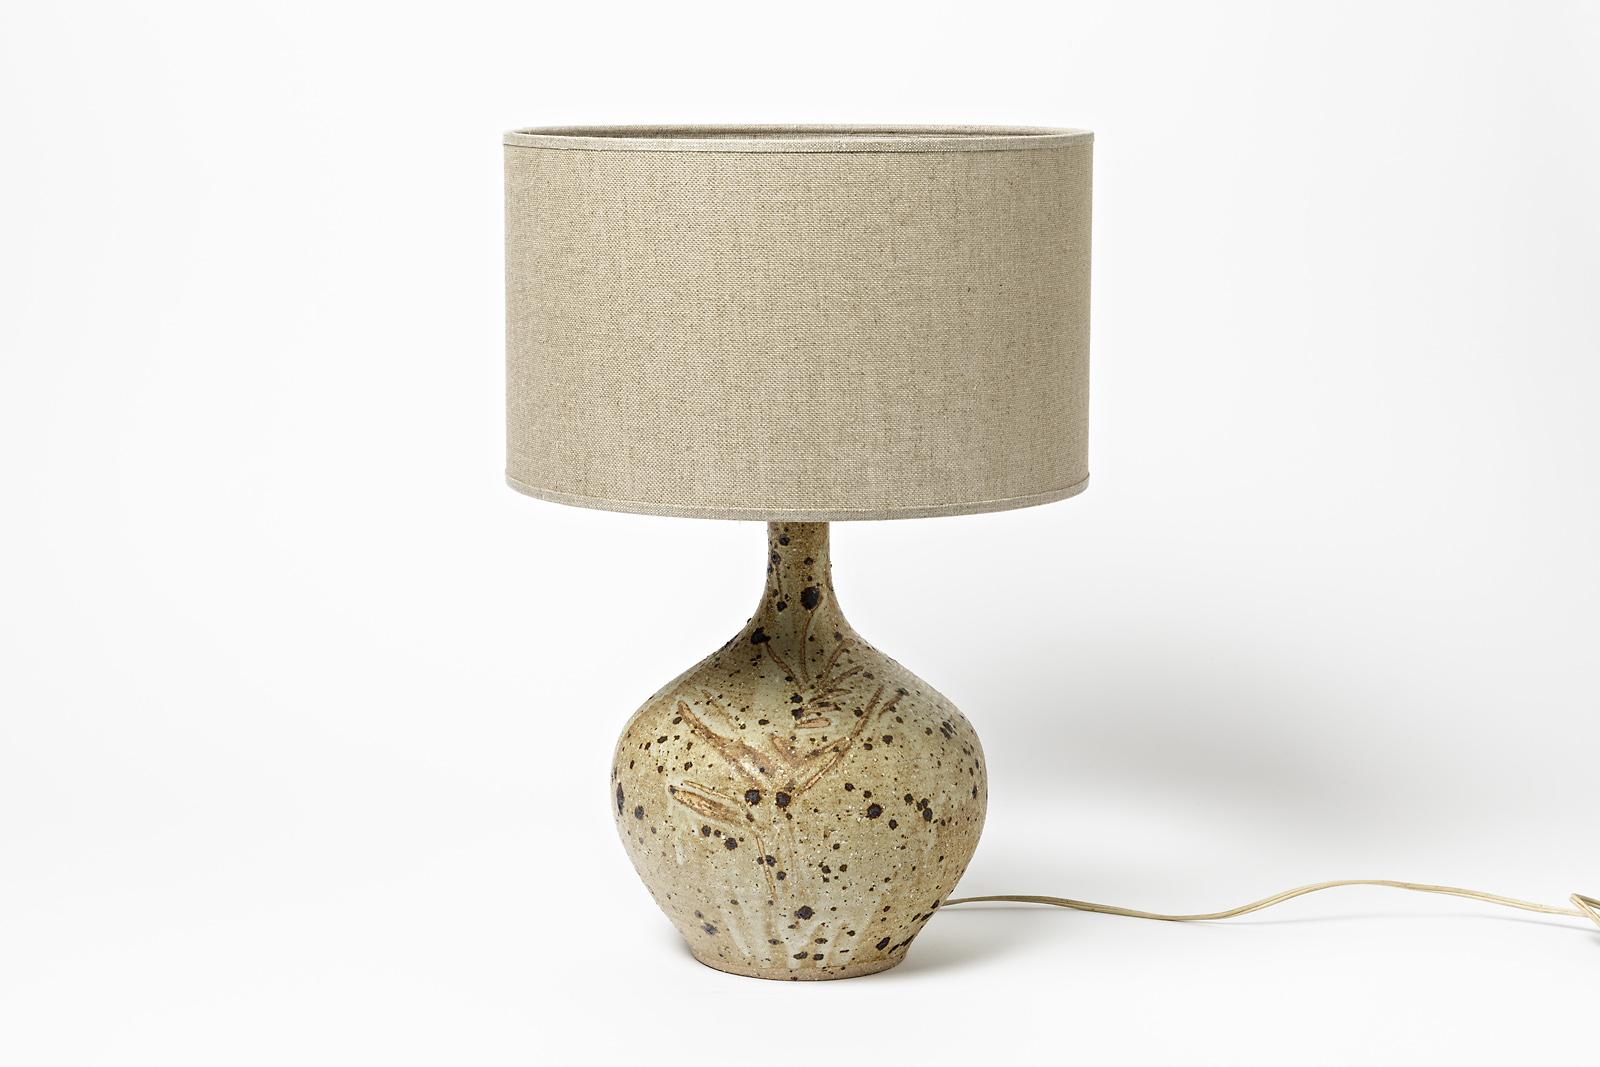 20th Century Brown Stoneware Ceramic Table Lamp from La Borne circa 1970 Signed For Sale